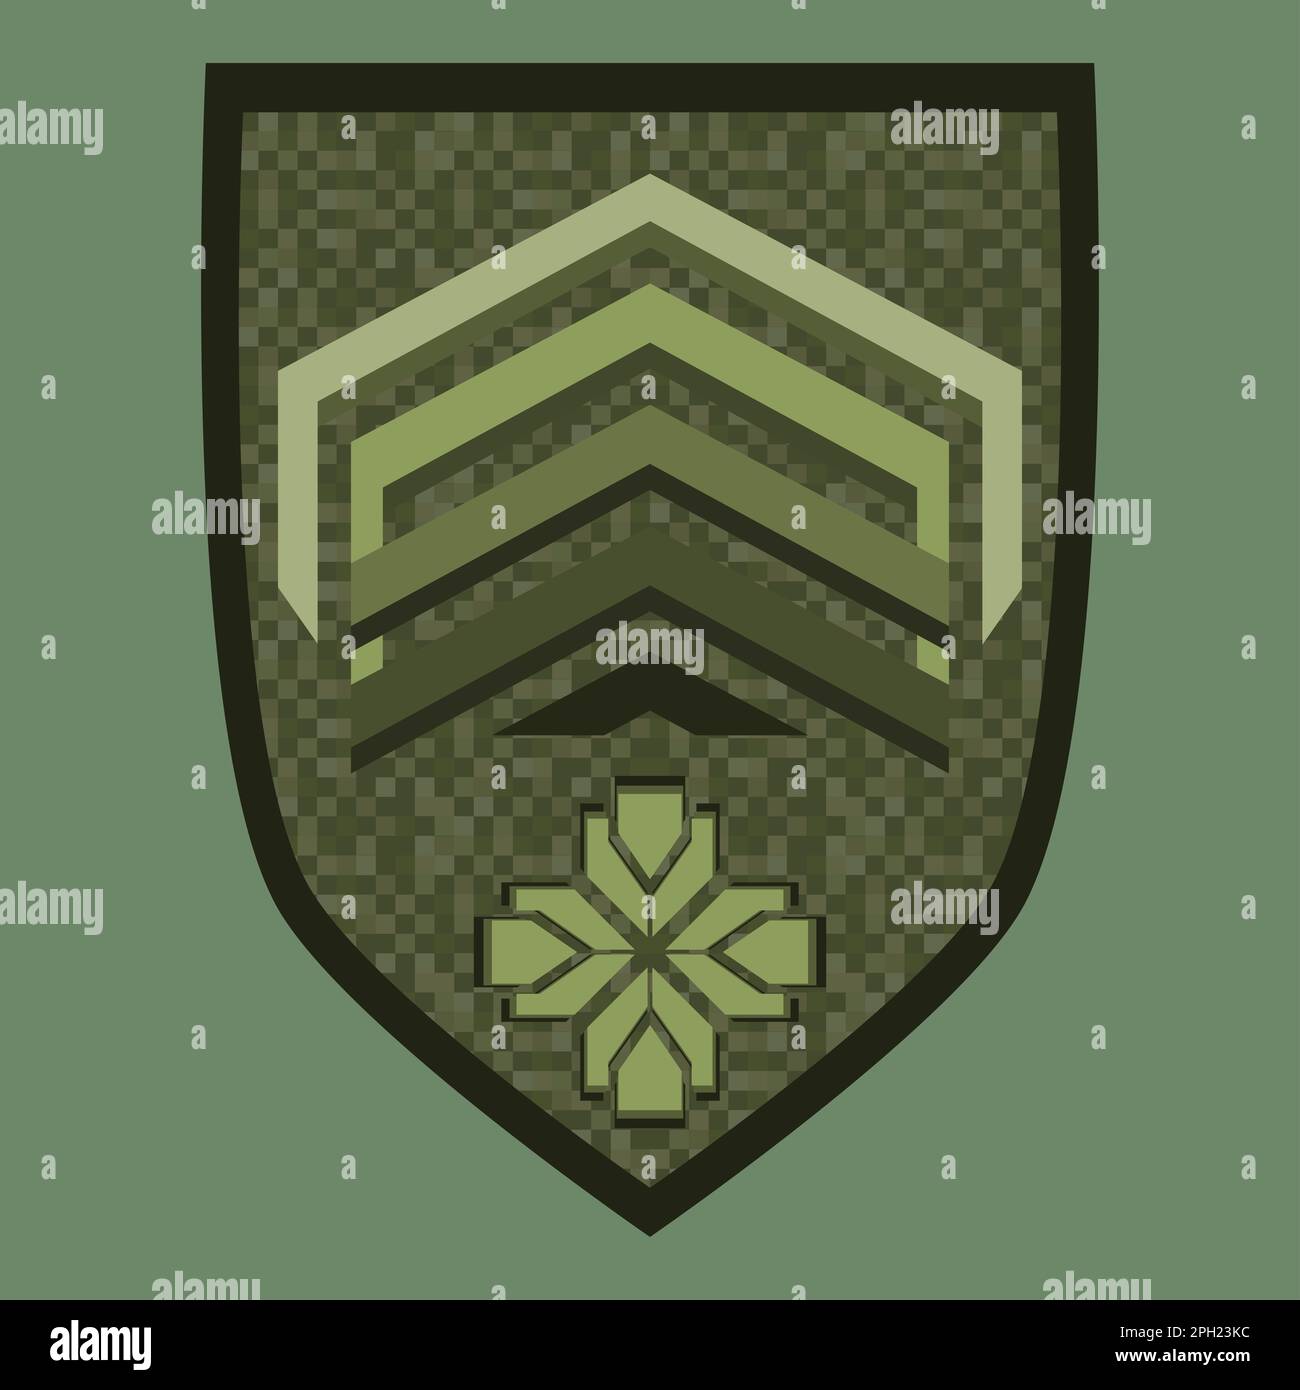 Das grüne Militär ist ein Schulterabzeichen. Armeesoldat Chevron. Uniform mit grünem Stern. Farbenfrohe Darstellung isoliert auf weißem Hintergrund. Stockfoto